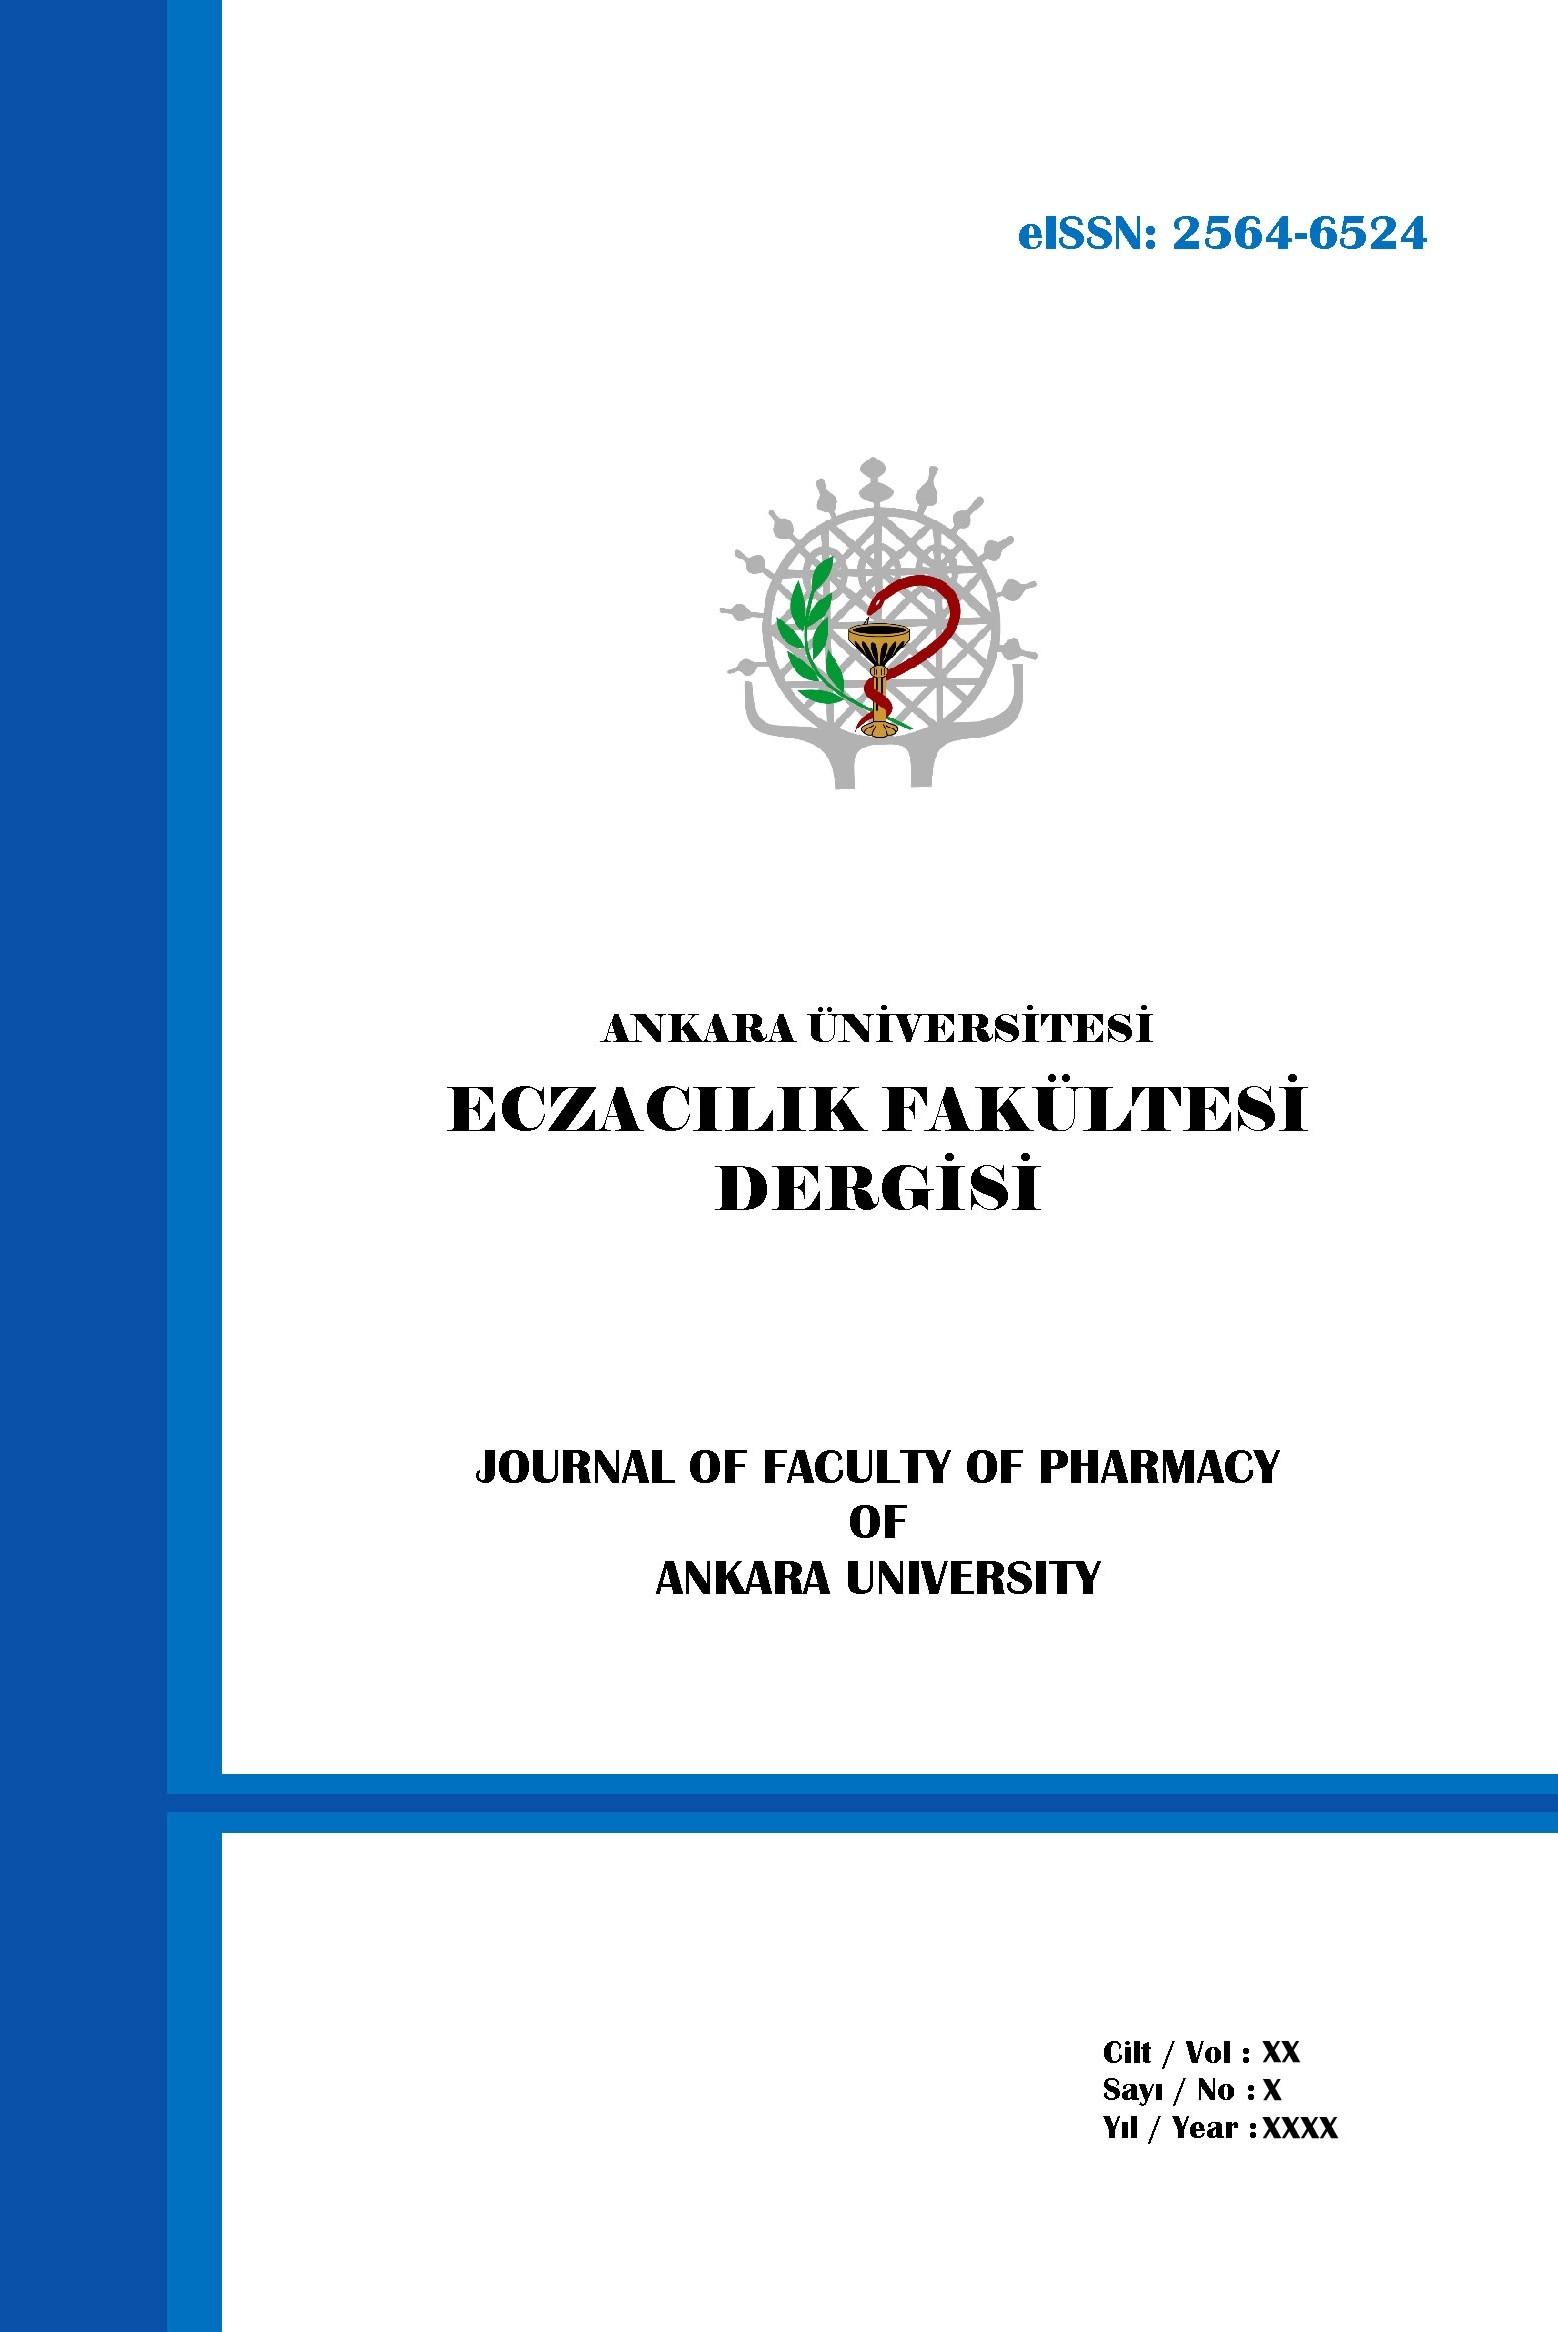 Ankara Üniversitesi Eczacılık Fakültesi Dergisi